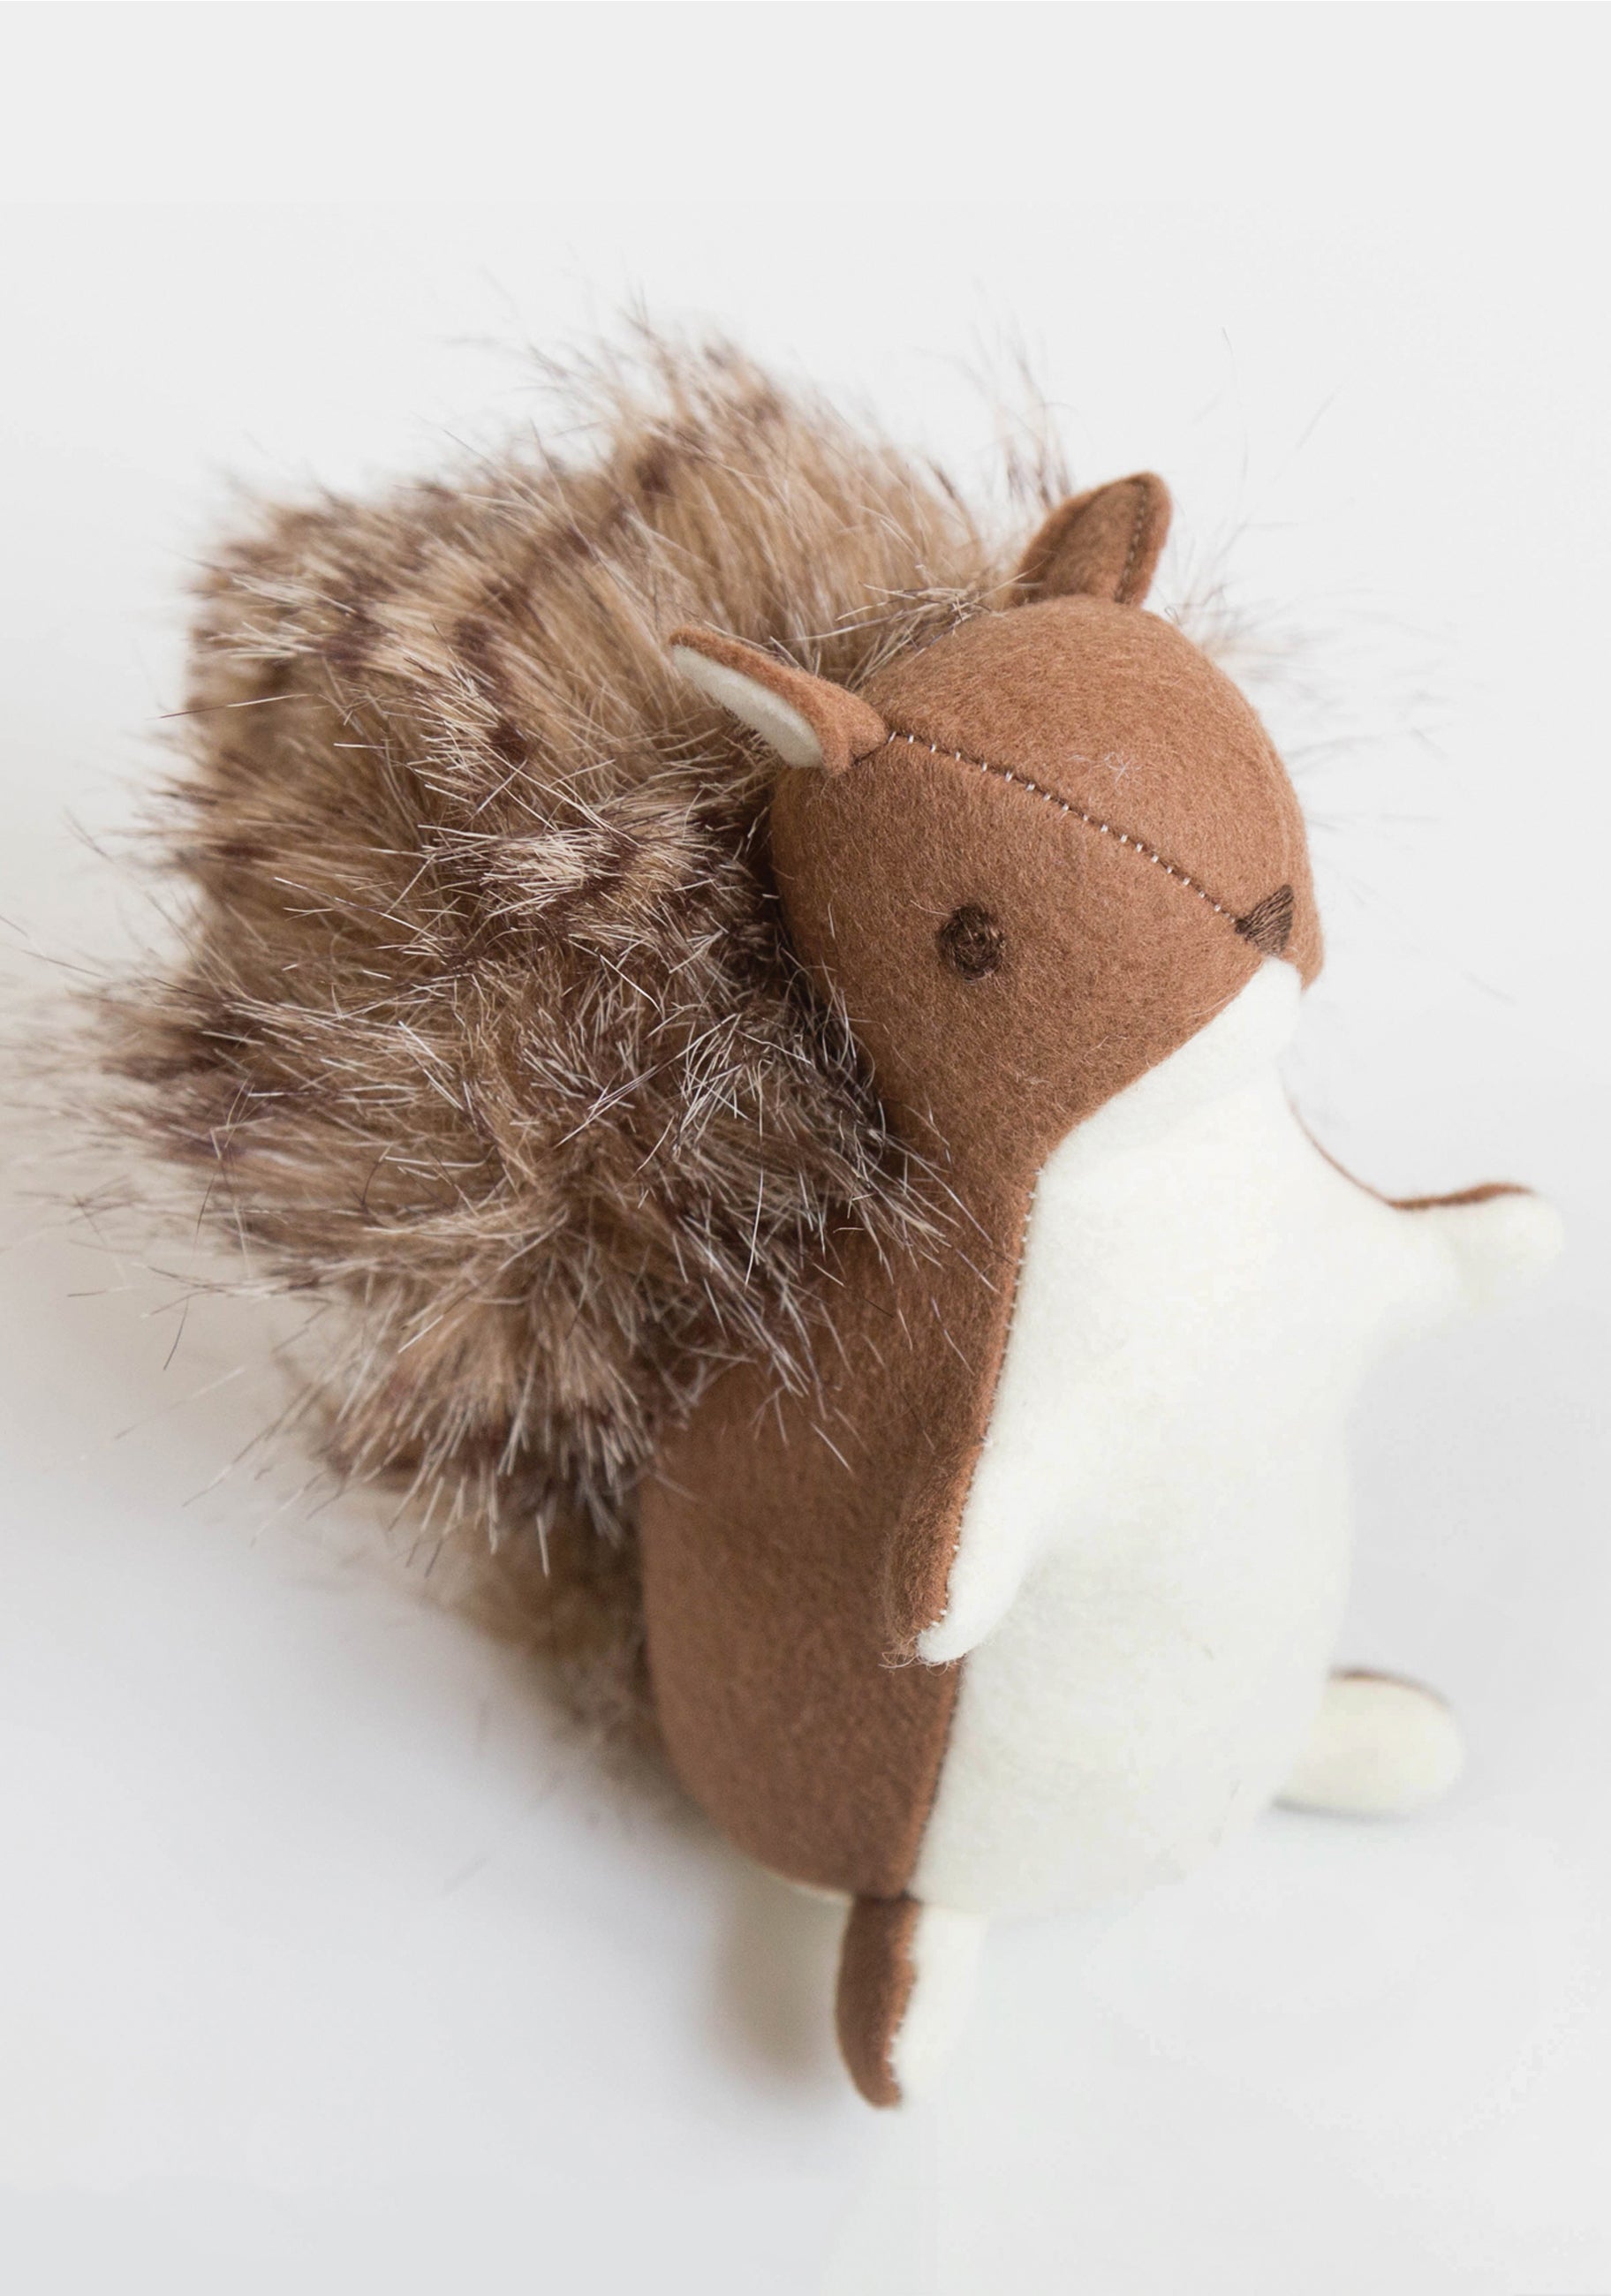 Squirrel Stuffed Toy Pattern | Grainline Studio